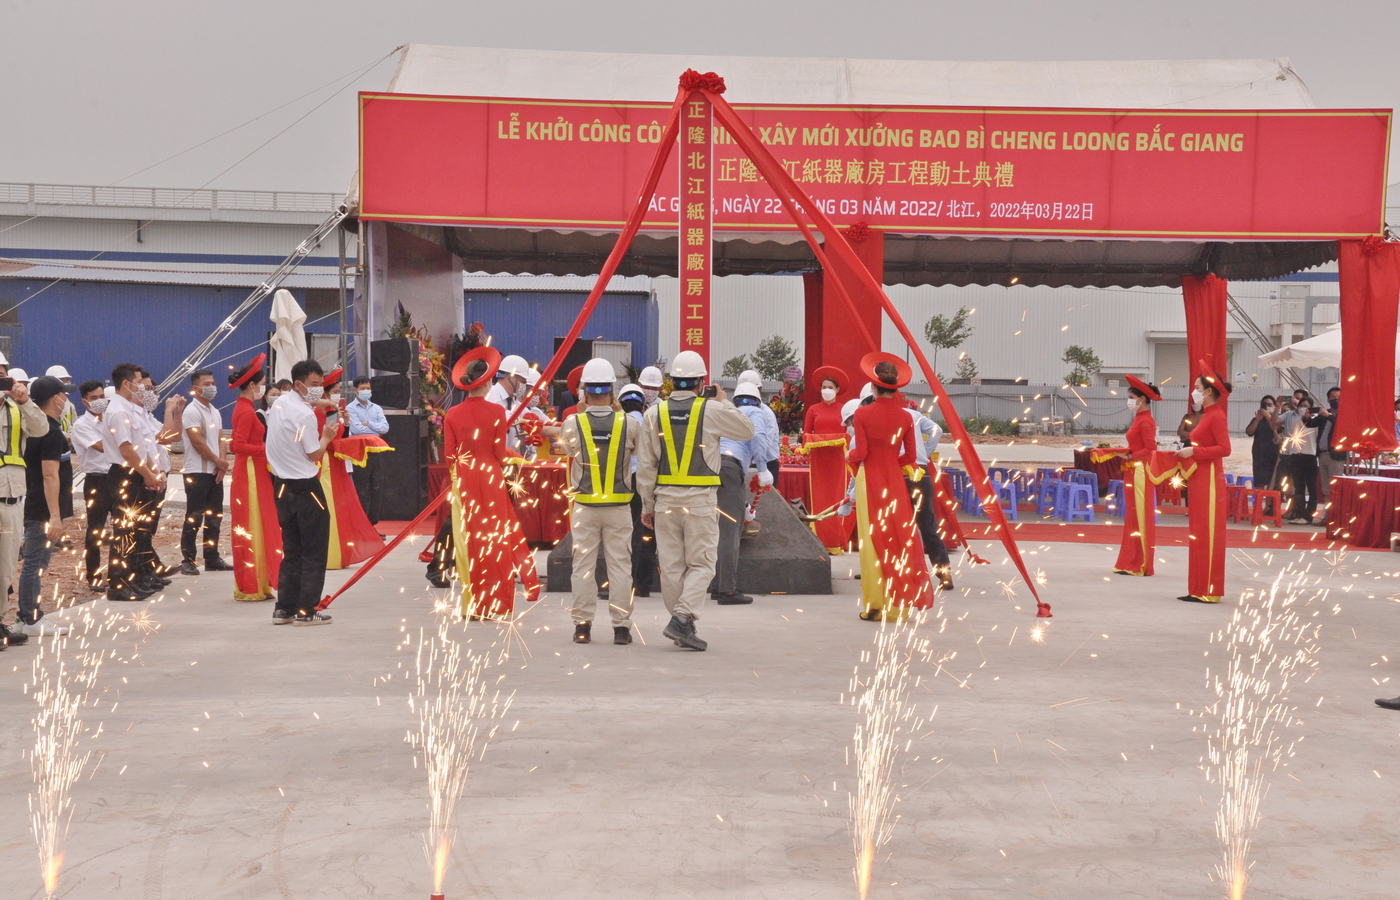 Lễ động thổ khởi công công trình xây mới xưởng bao bì Cheng Loong Bắc Giang